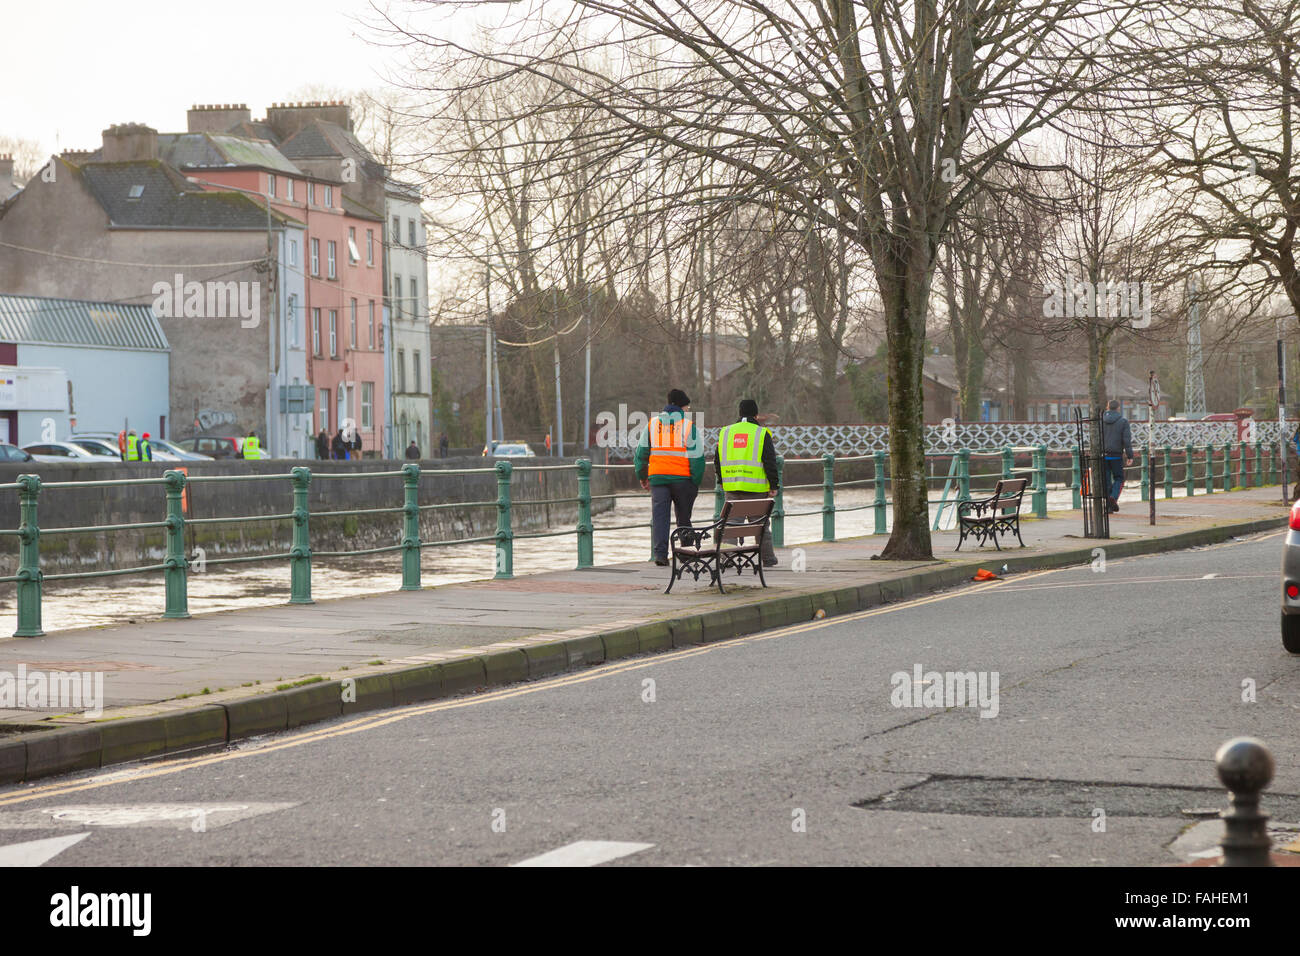 La ville de Cork, Irlande. 30 Décembre, 2015. Après la tempête a frappé l'Irlande Frank gens hier à la personne disparue Banque D'Images